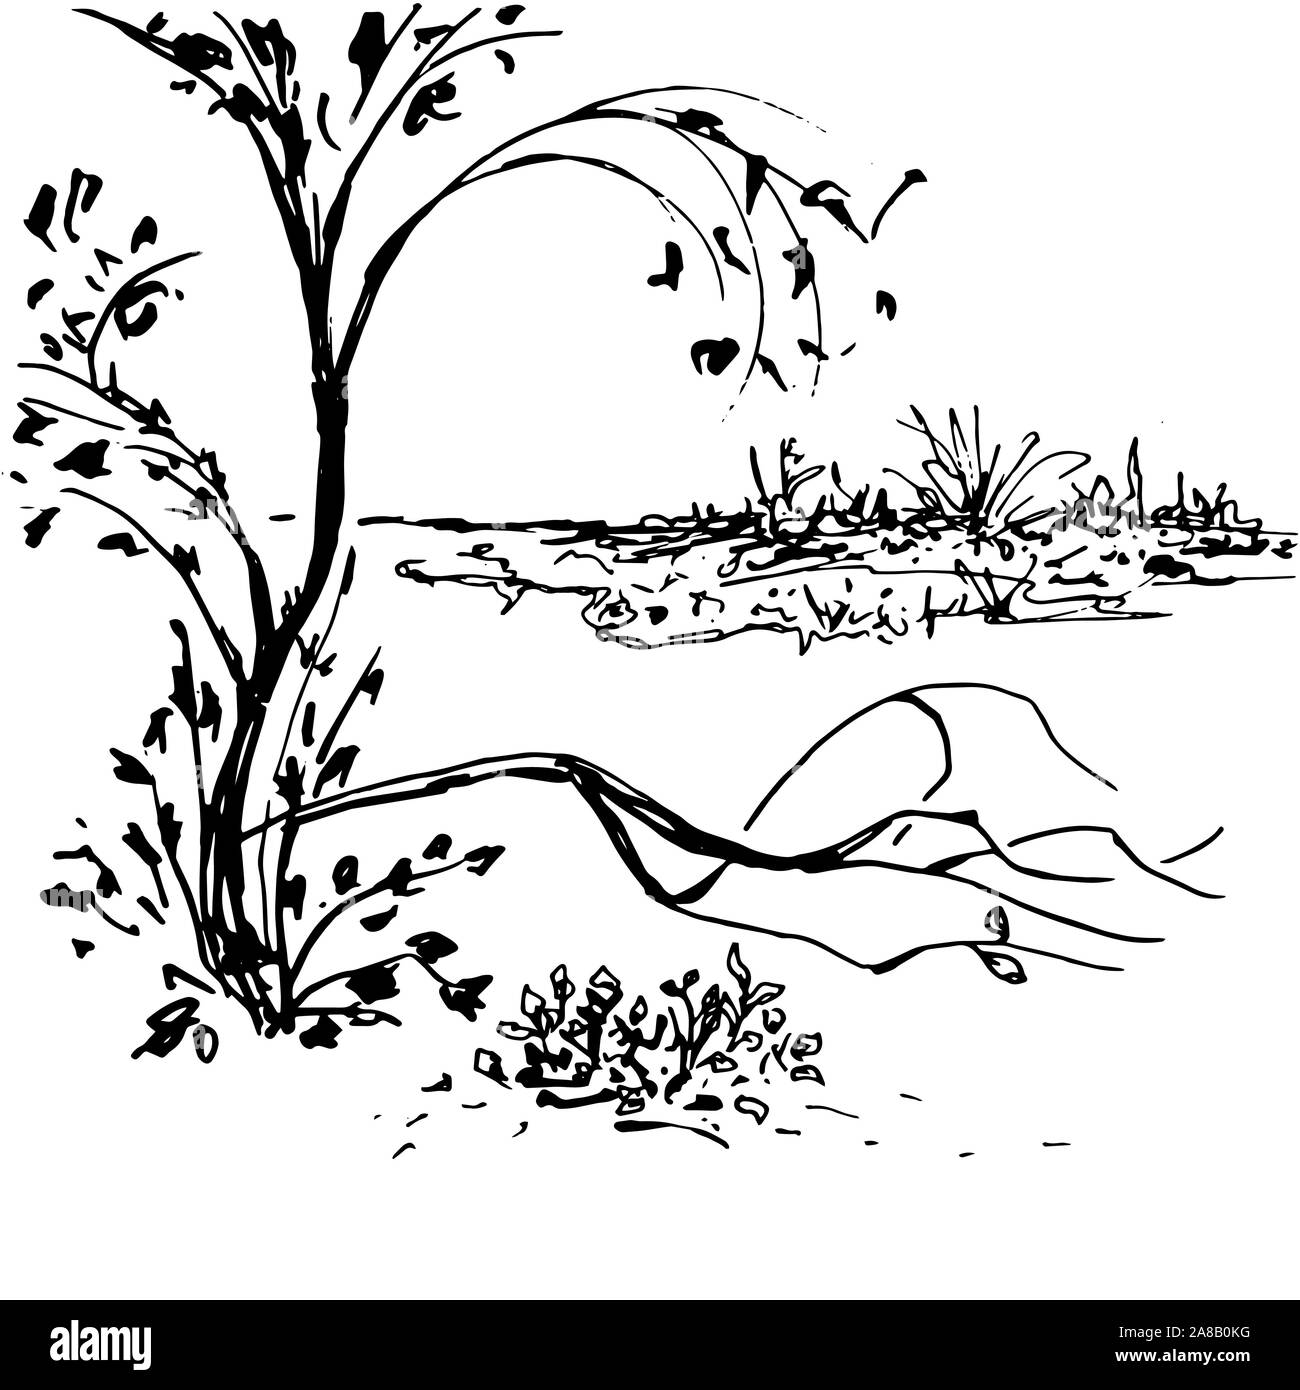 Nature Paysage noir vector hand drawn illustration. Décor oriental traditionnel avec l'arbre. Dessin peinture botanique dans le style japonais. Scène tranquille, paisible nature composition Illustration de Vecteur